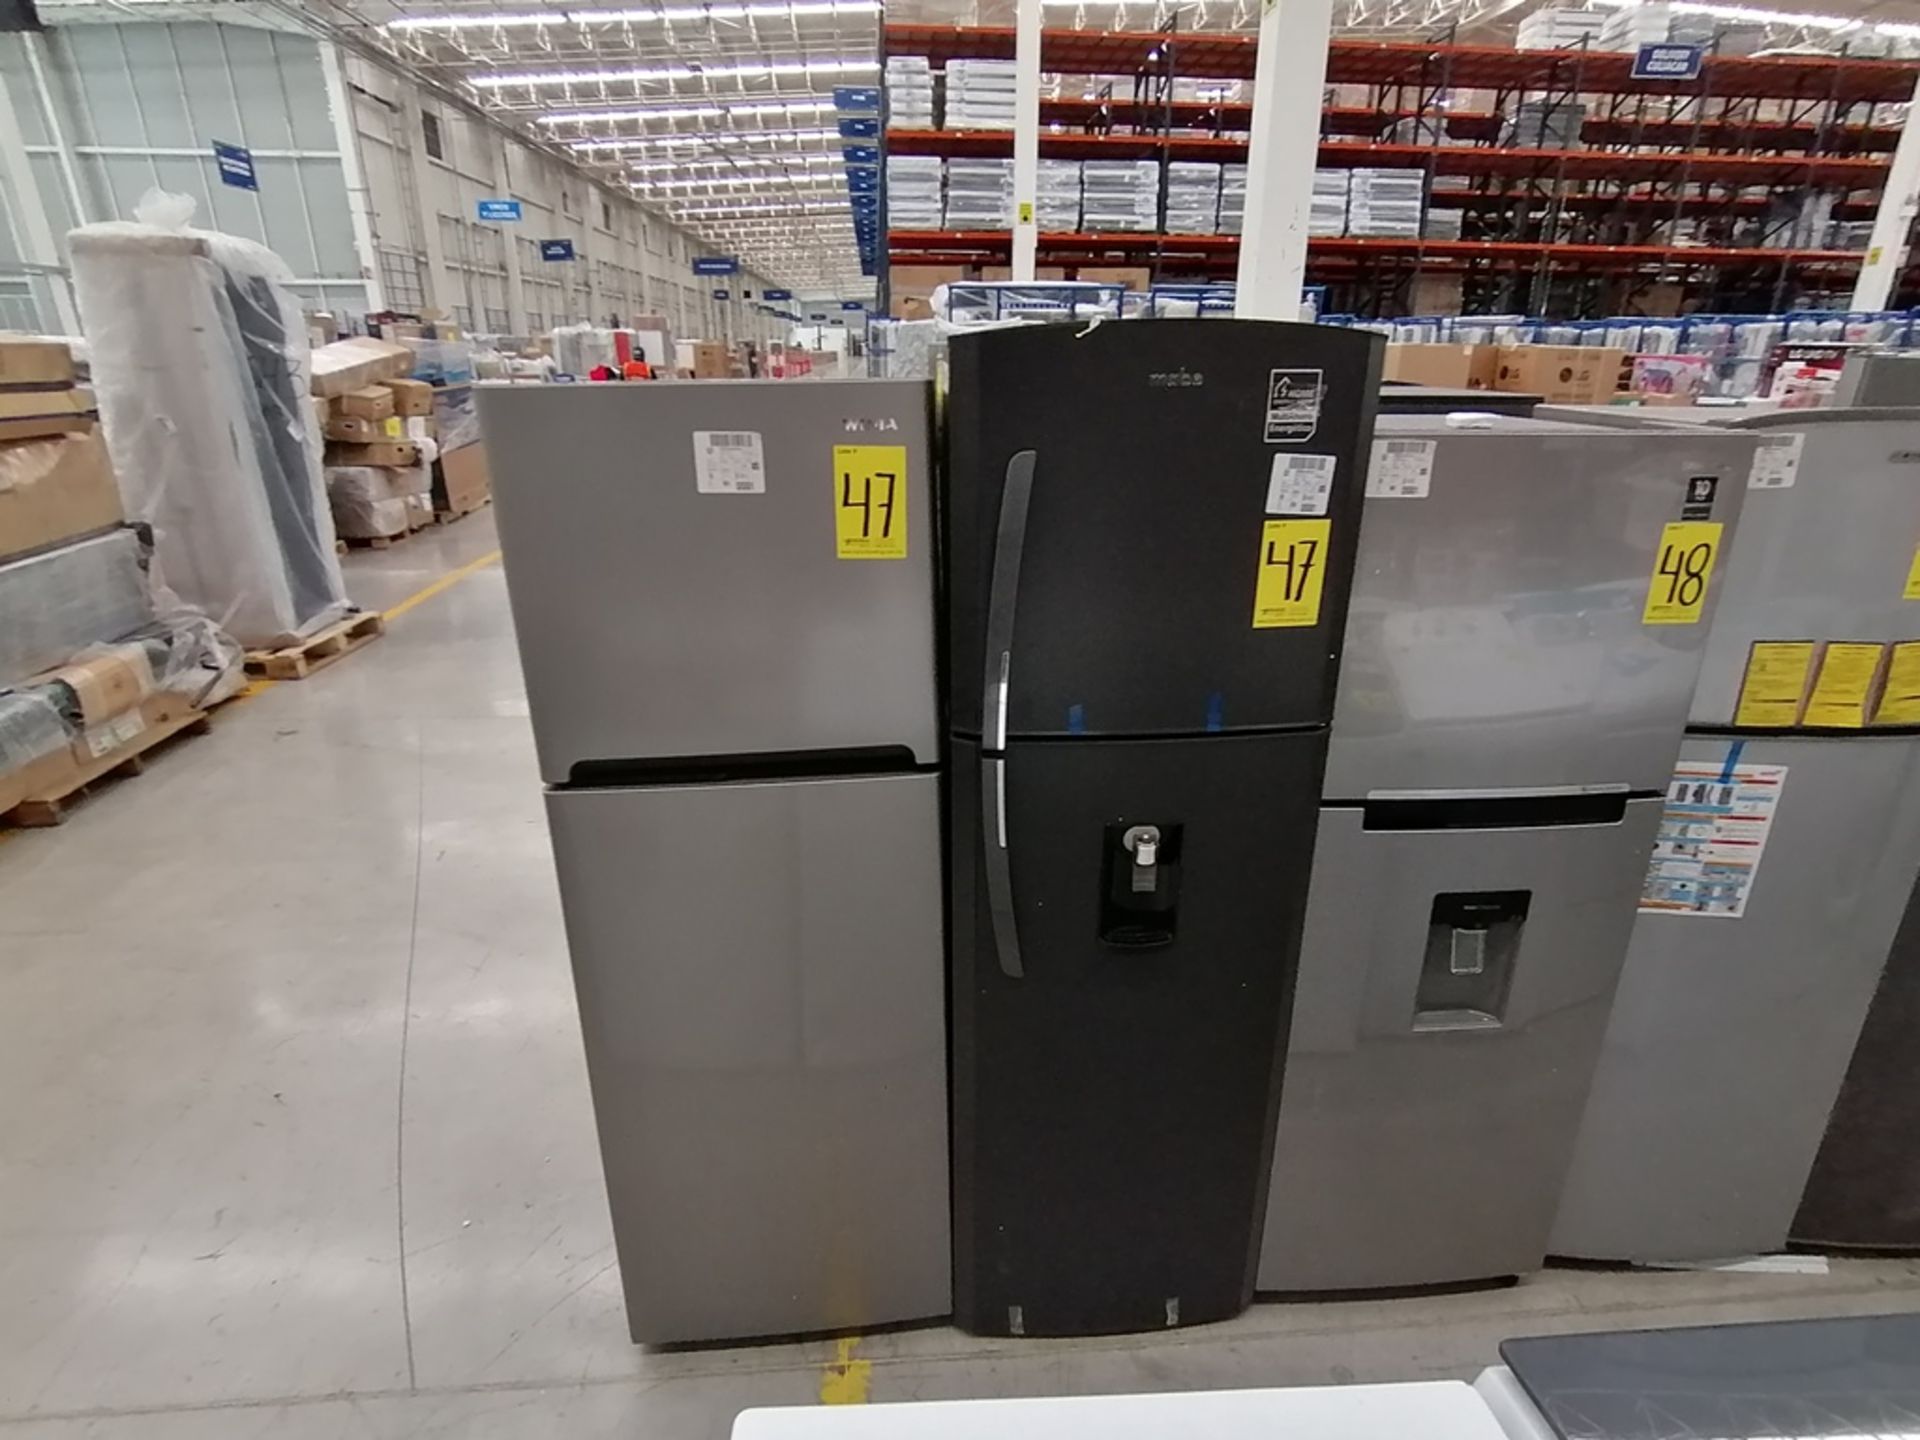 Lote de 2 refrigeradores incluye: 1 Refrigerador, Marca Winia, Modelo DFR32210GNV, Serie MR219N1206 - Image 3 of 15